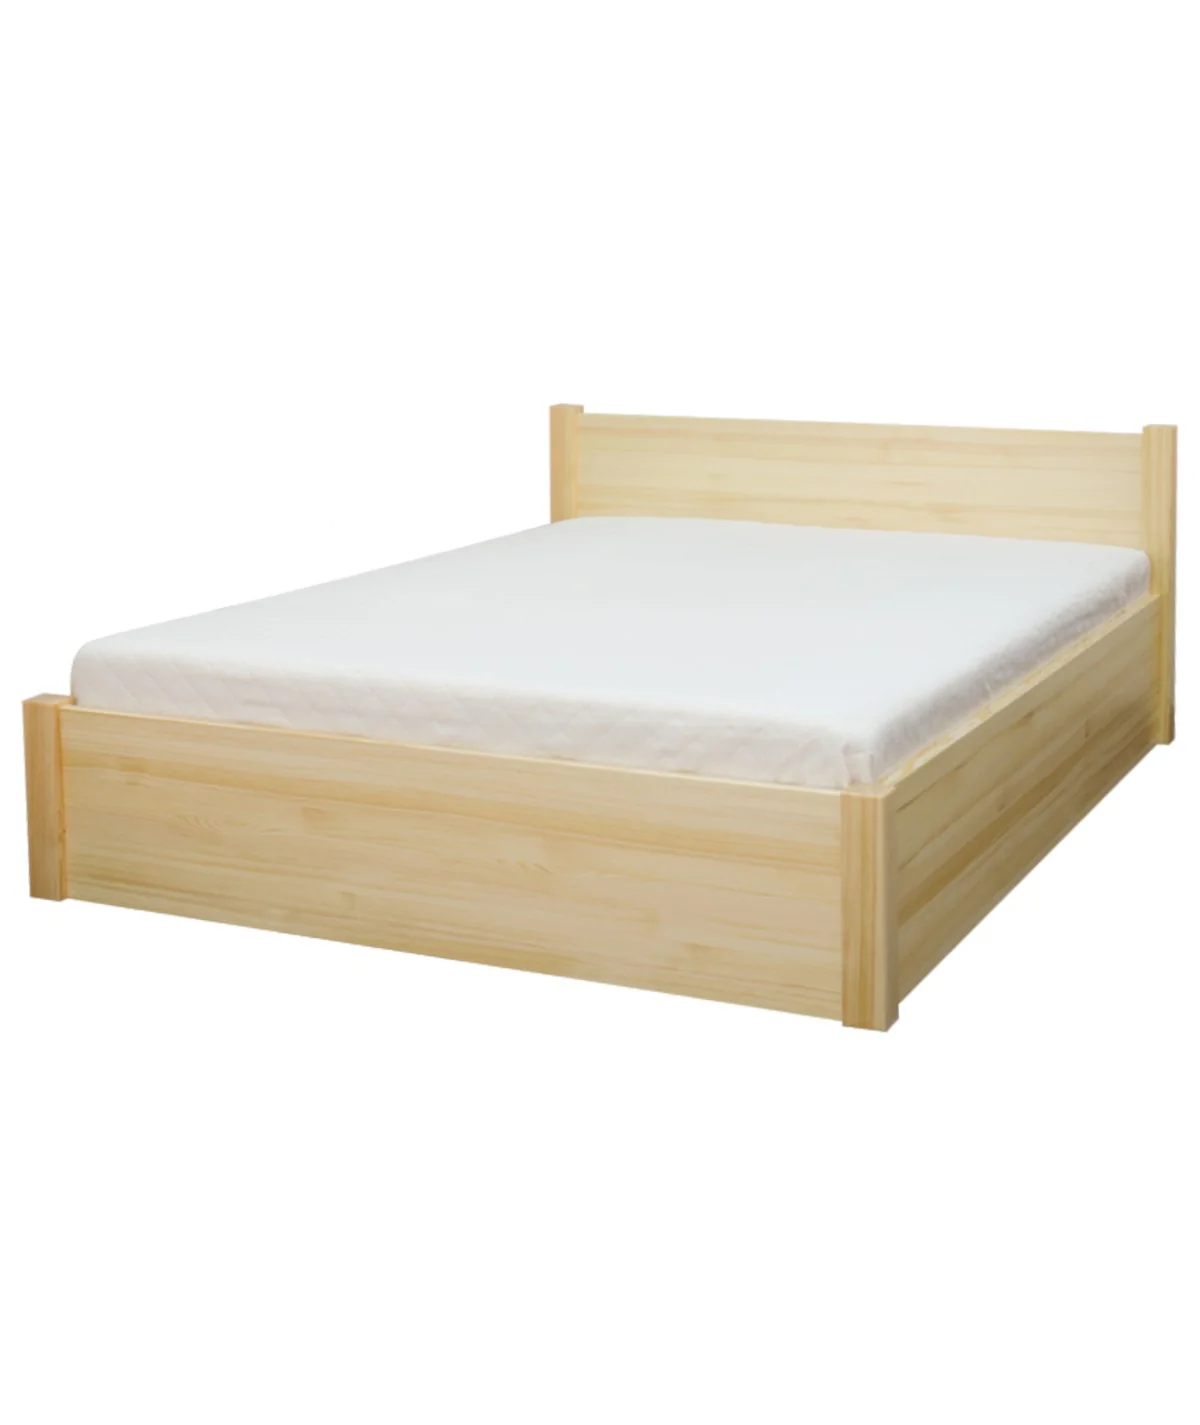 Łóżko bukowe RUBIN 3 STOLMIS podnoszone na ramie drewnianej